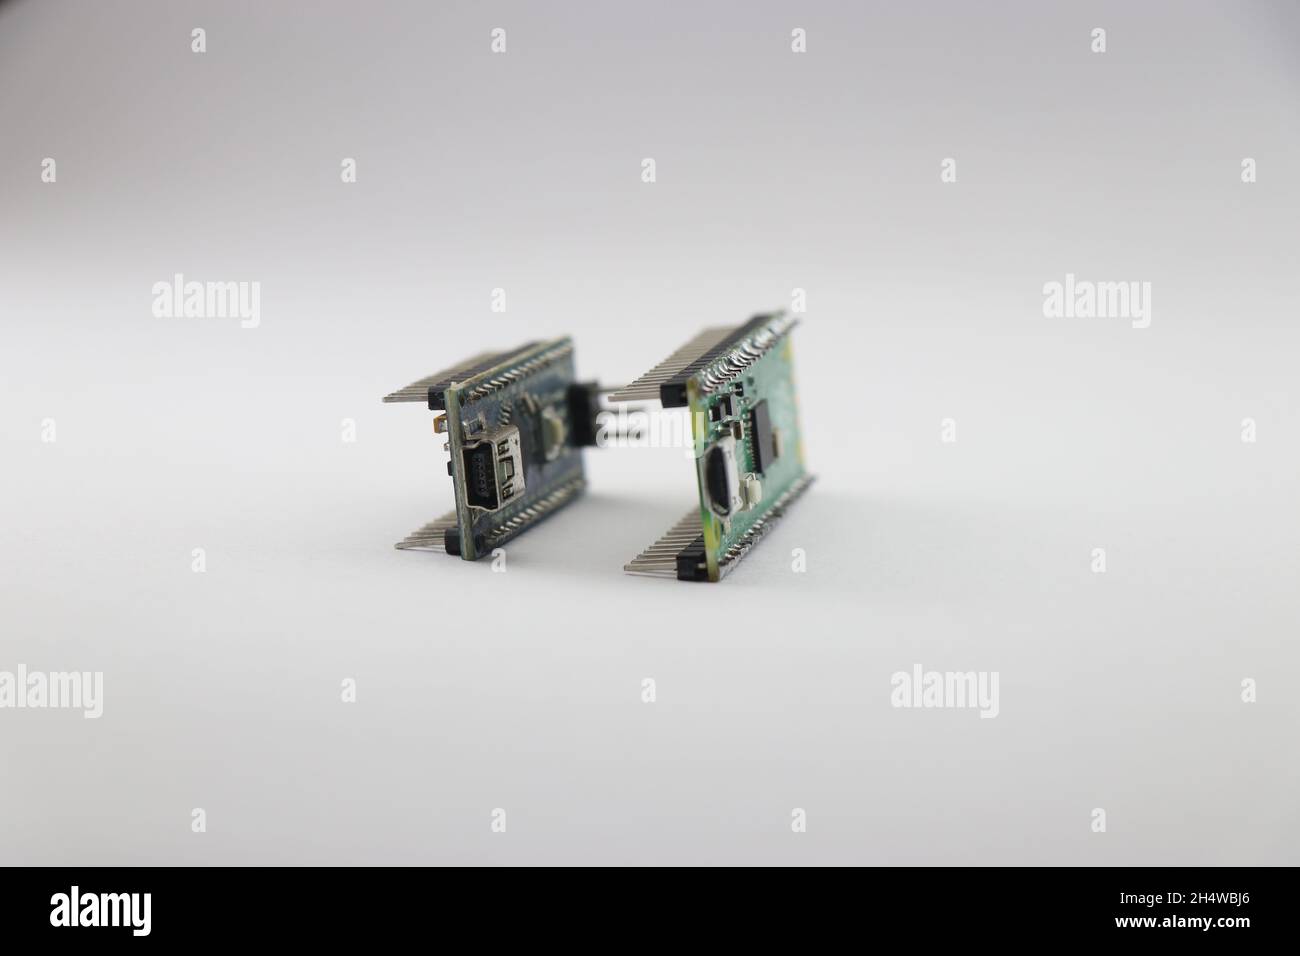 Vista laterale delle schede microcontroller, tipo di schede di prototipazione utilizzate per realizzare progetti di elettronica creativa e robotica Foto Stock